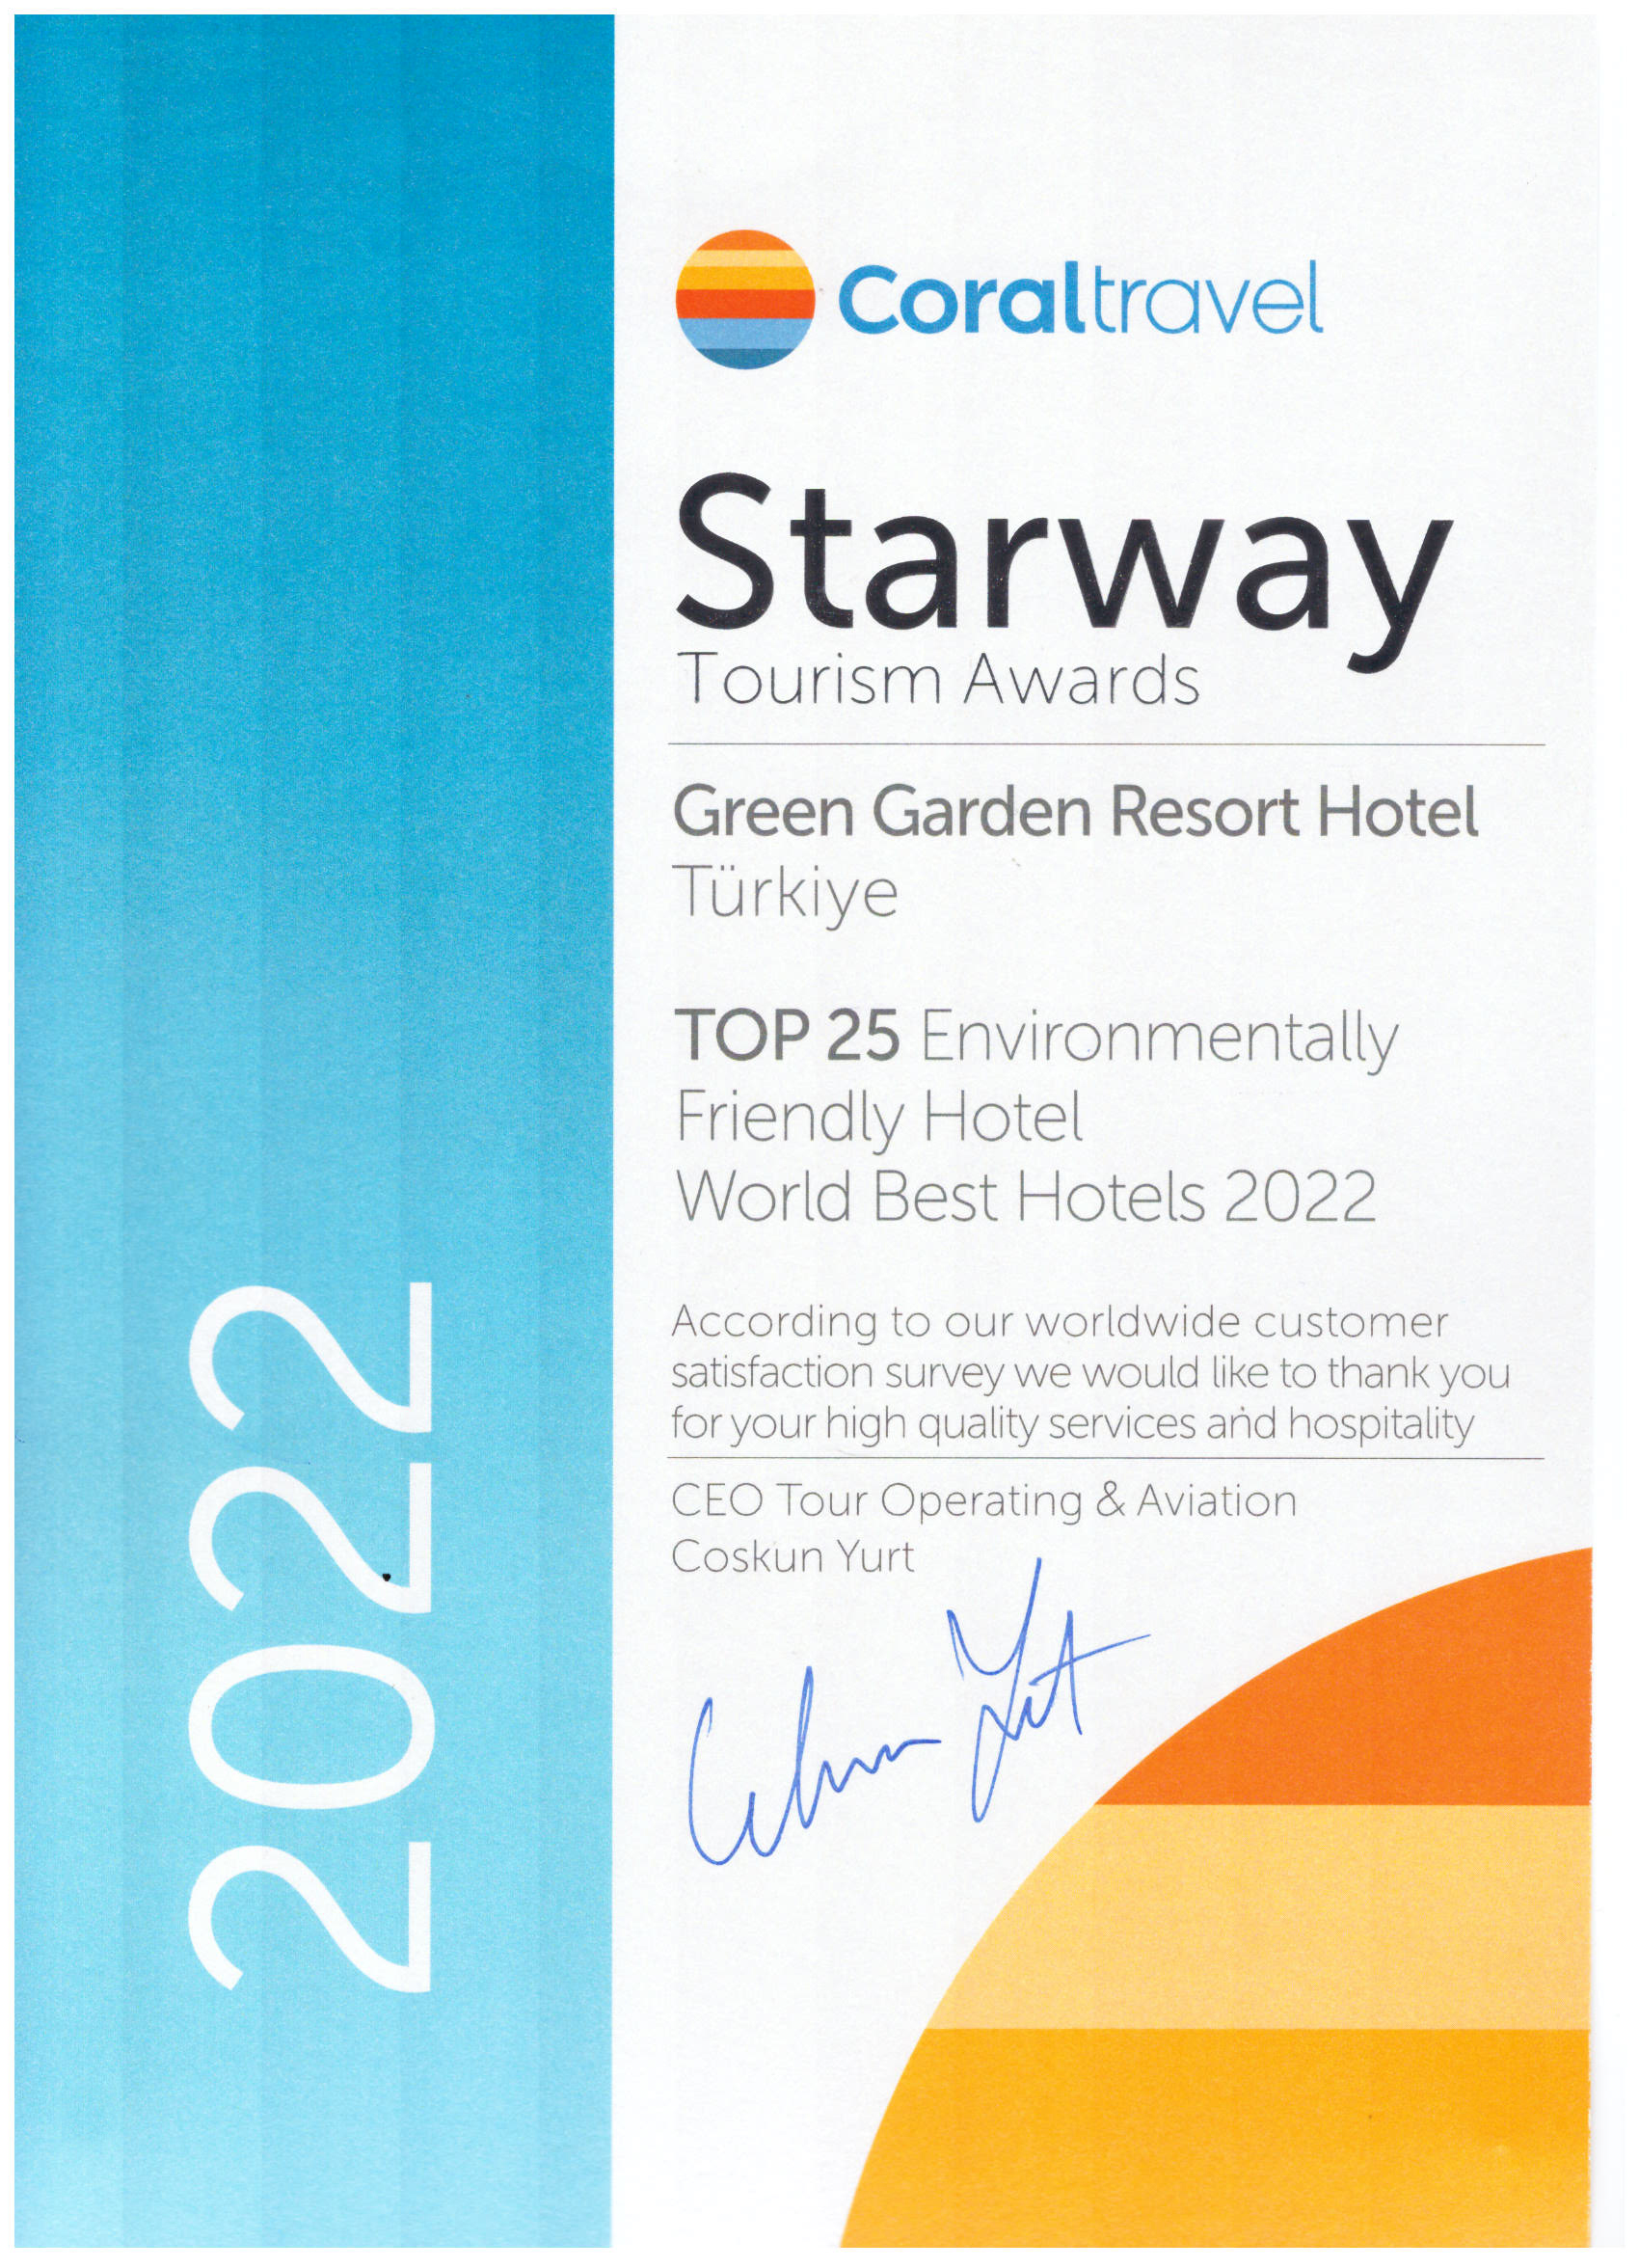 Green Garden Hotels